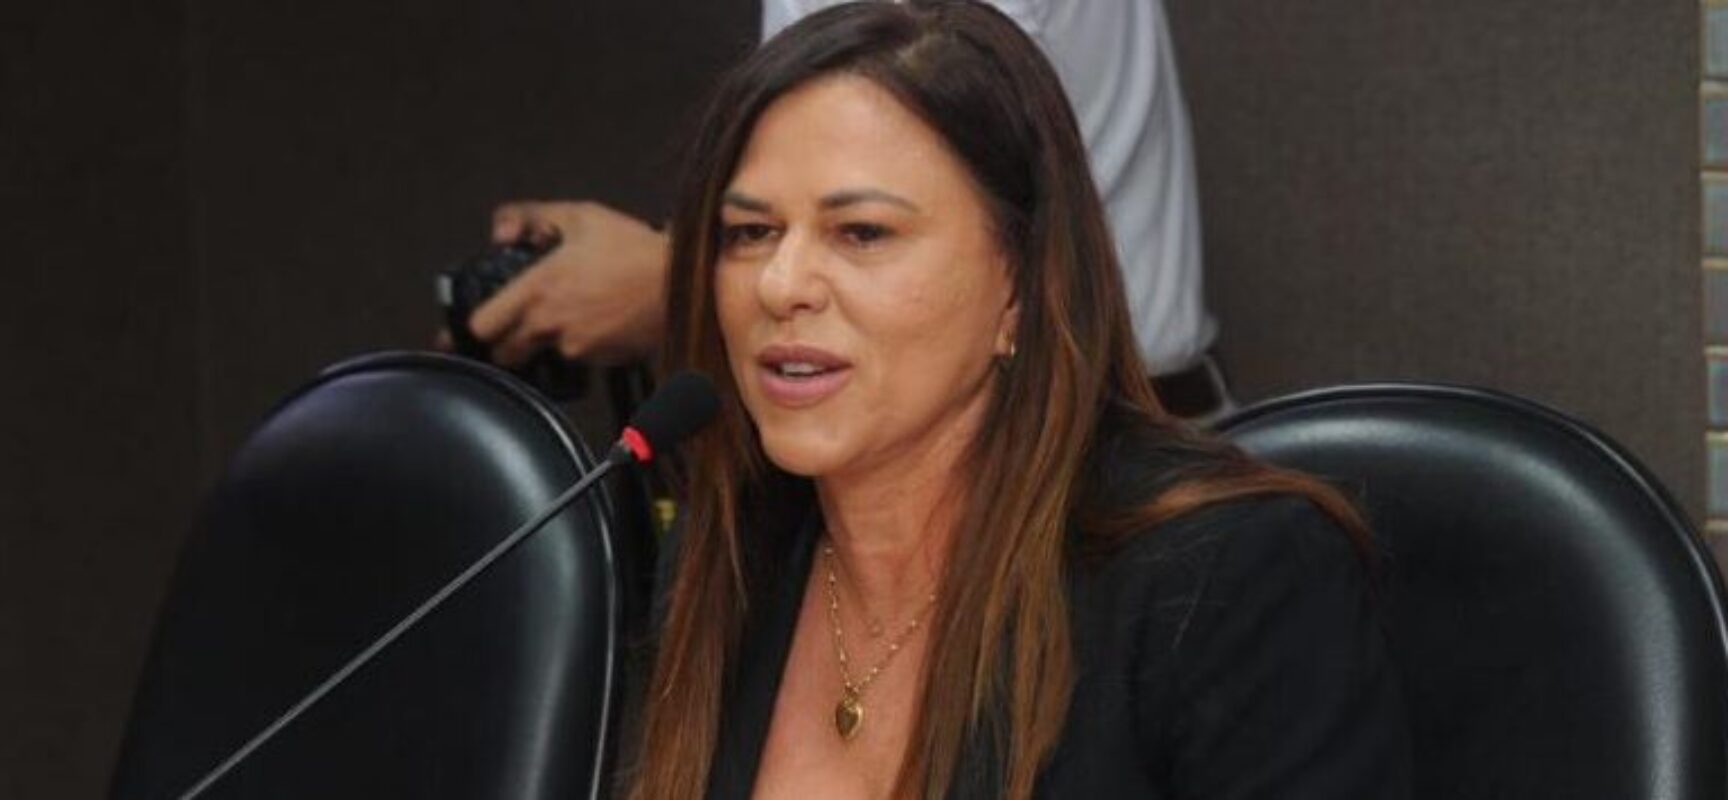 Deputada Soane Galvão participa de Seminário Nacional que exalta a participação da Mulher nas esferas políticas.